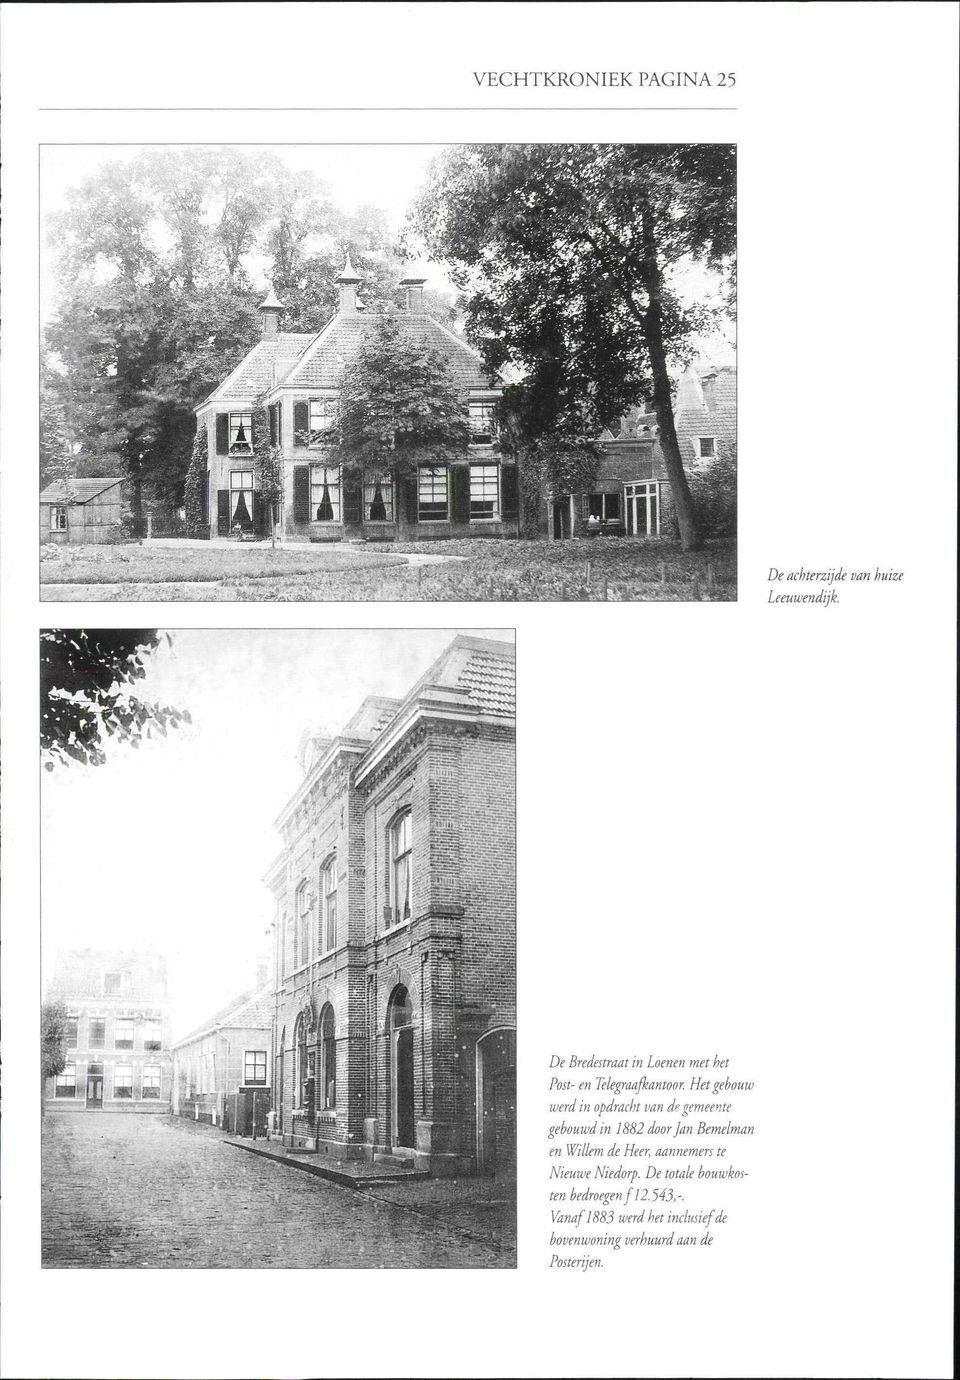 Het gebouw werd in opdracht van de gemeente gebouwd in 1882 door Jan Bemelman en Willem de